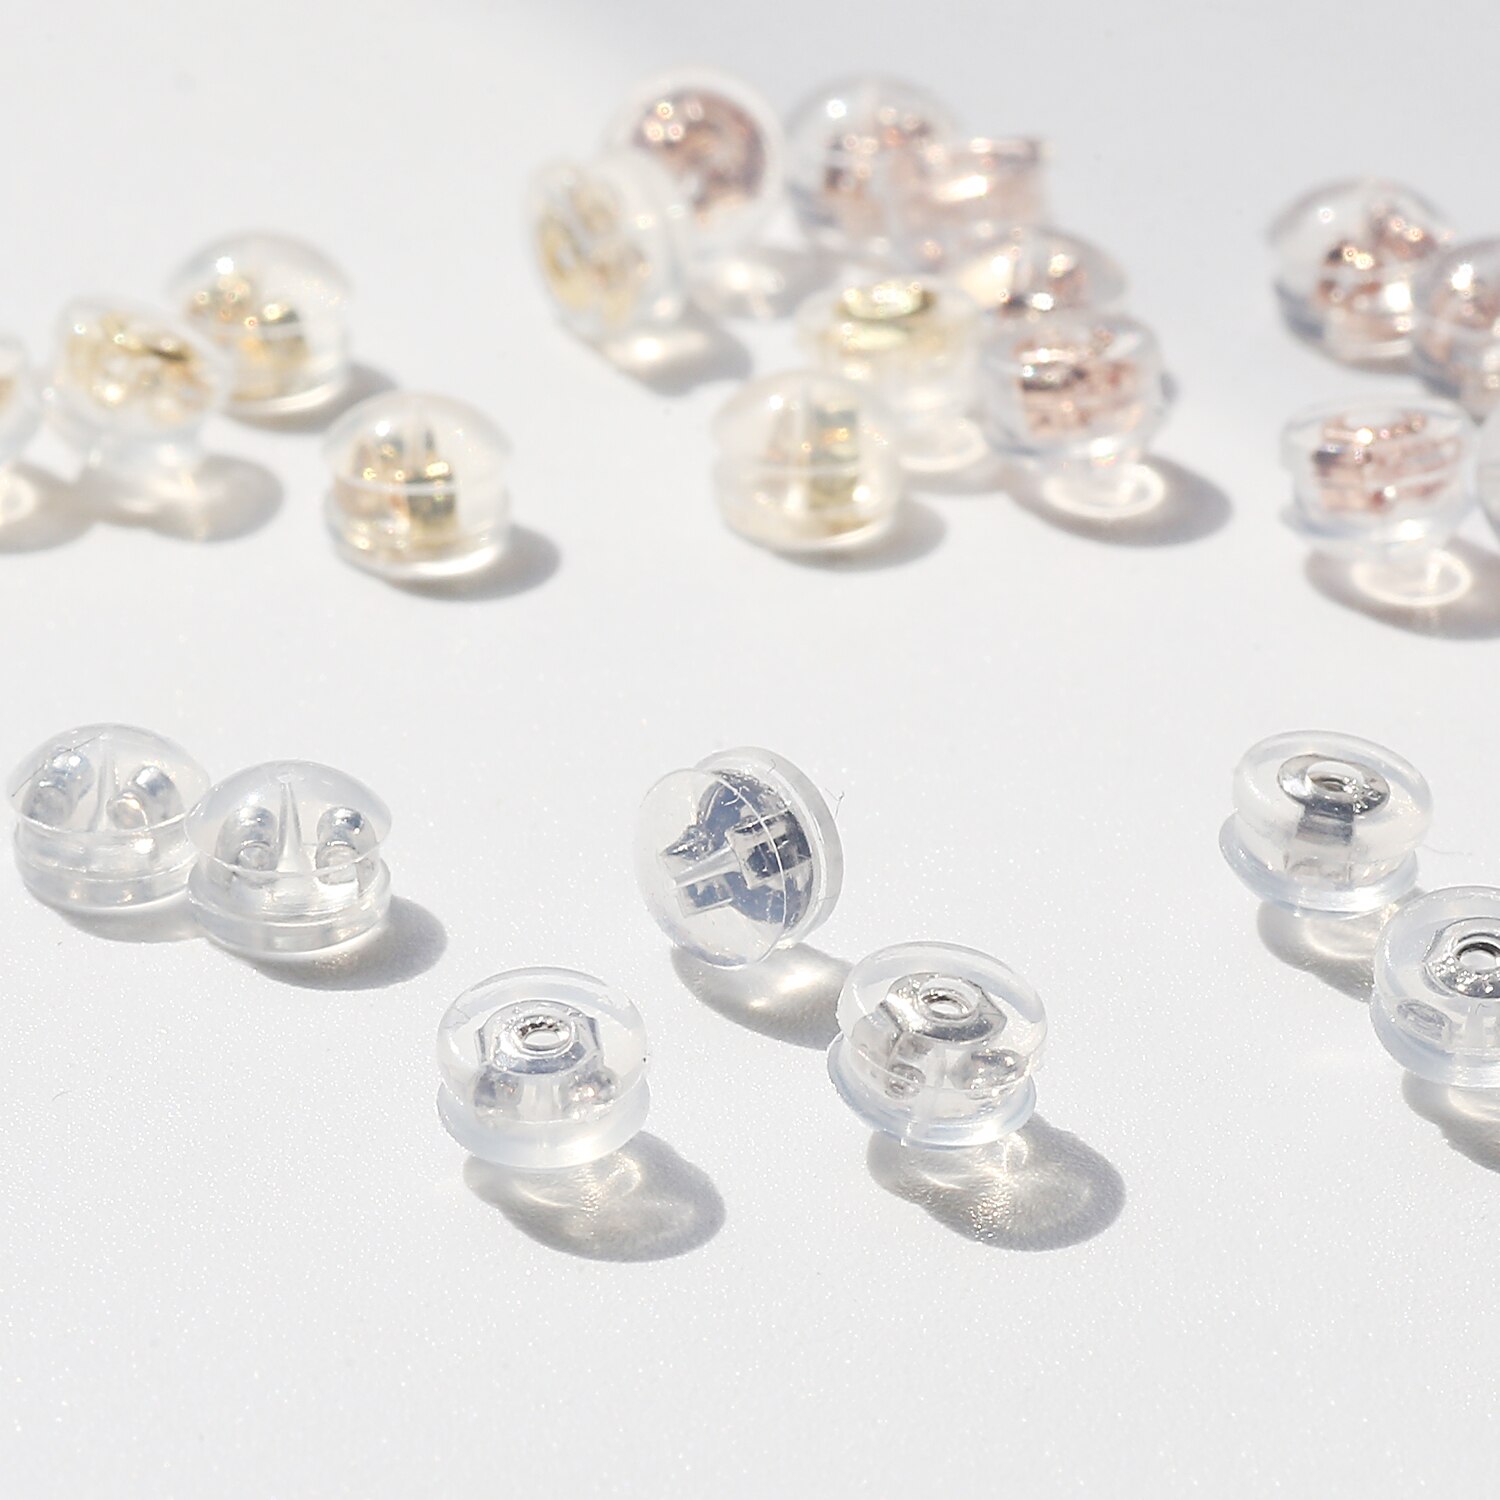 6Pcs 5Mm Bloemen Ronde Earring Backs Rose Goud Rhodium Plated Oorbellen Stud Siliconen Gecoat Koper Voor Oorbel Accessoires